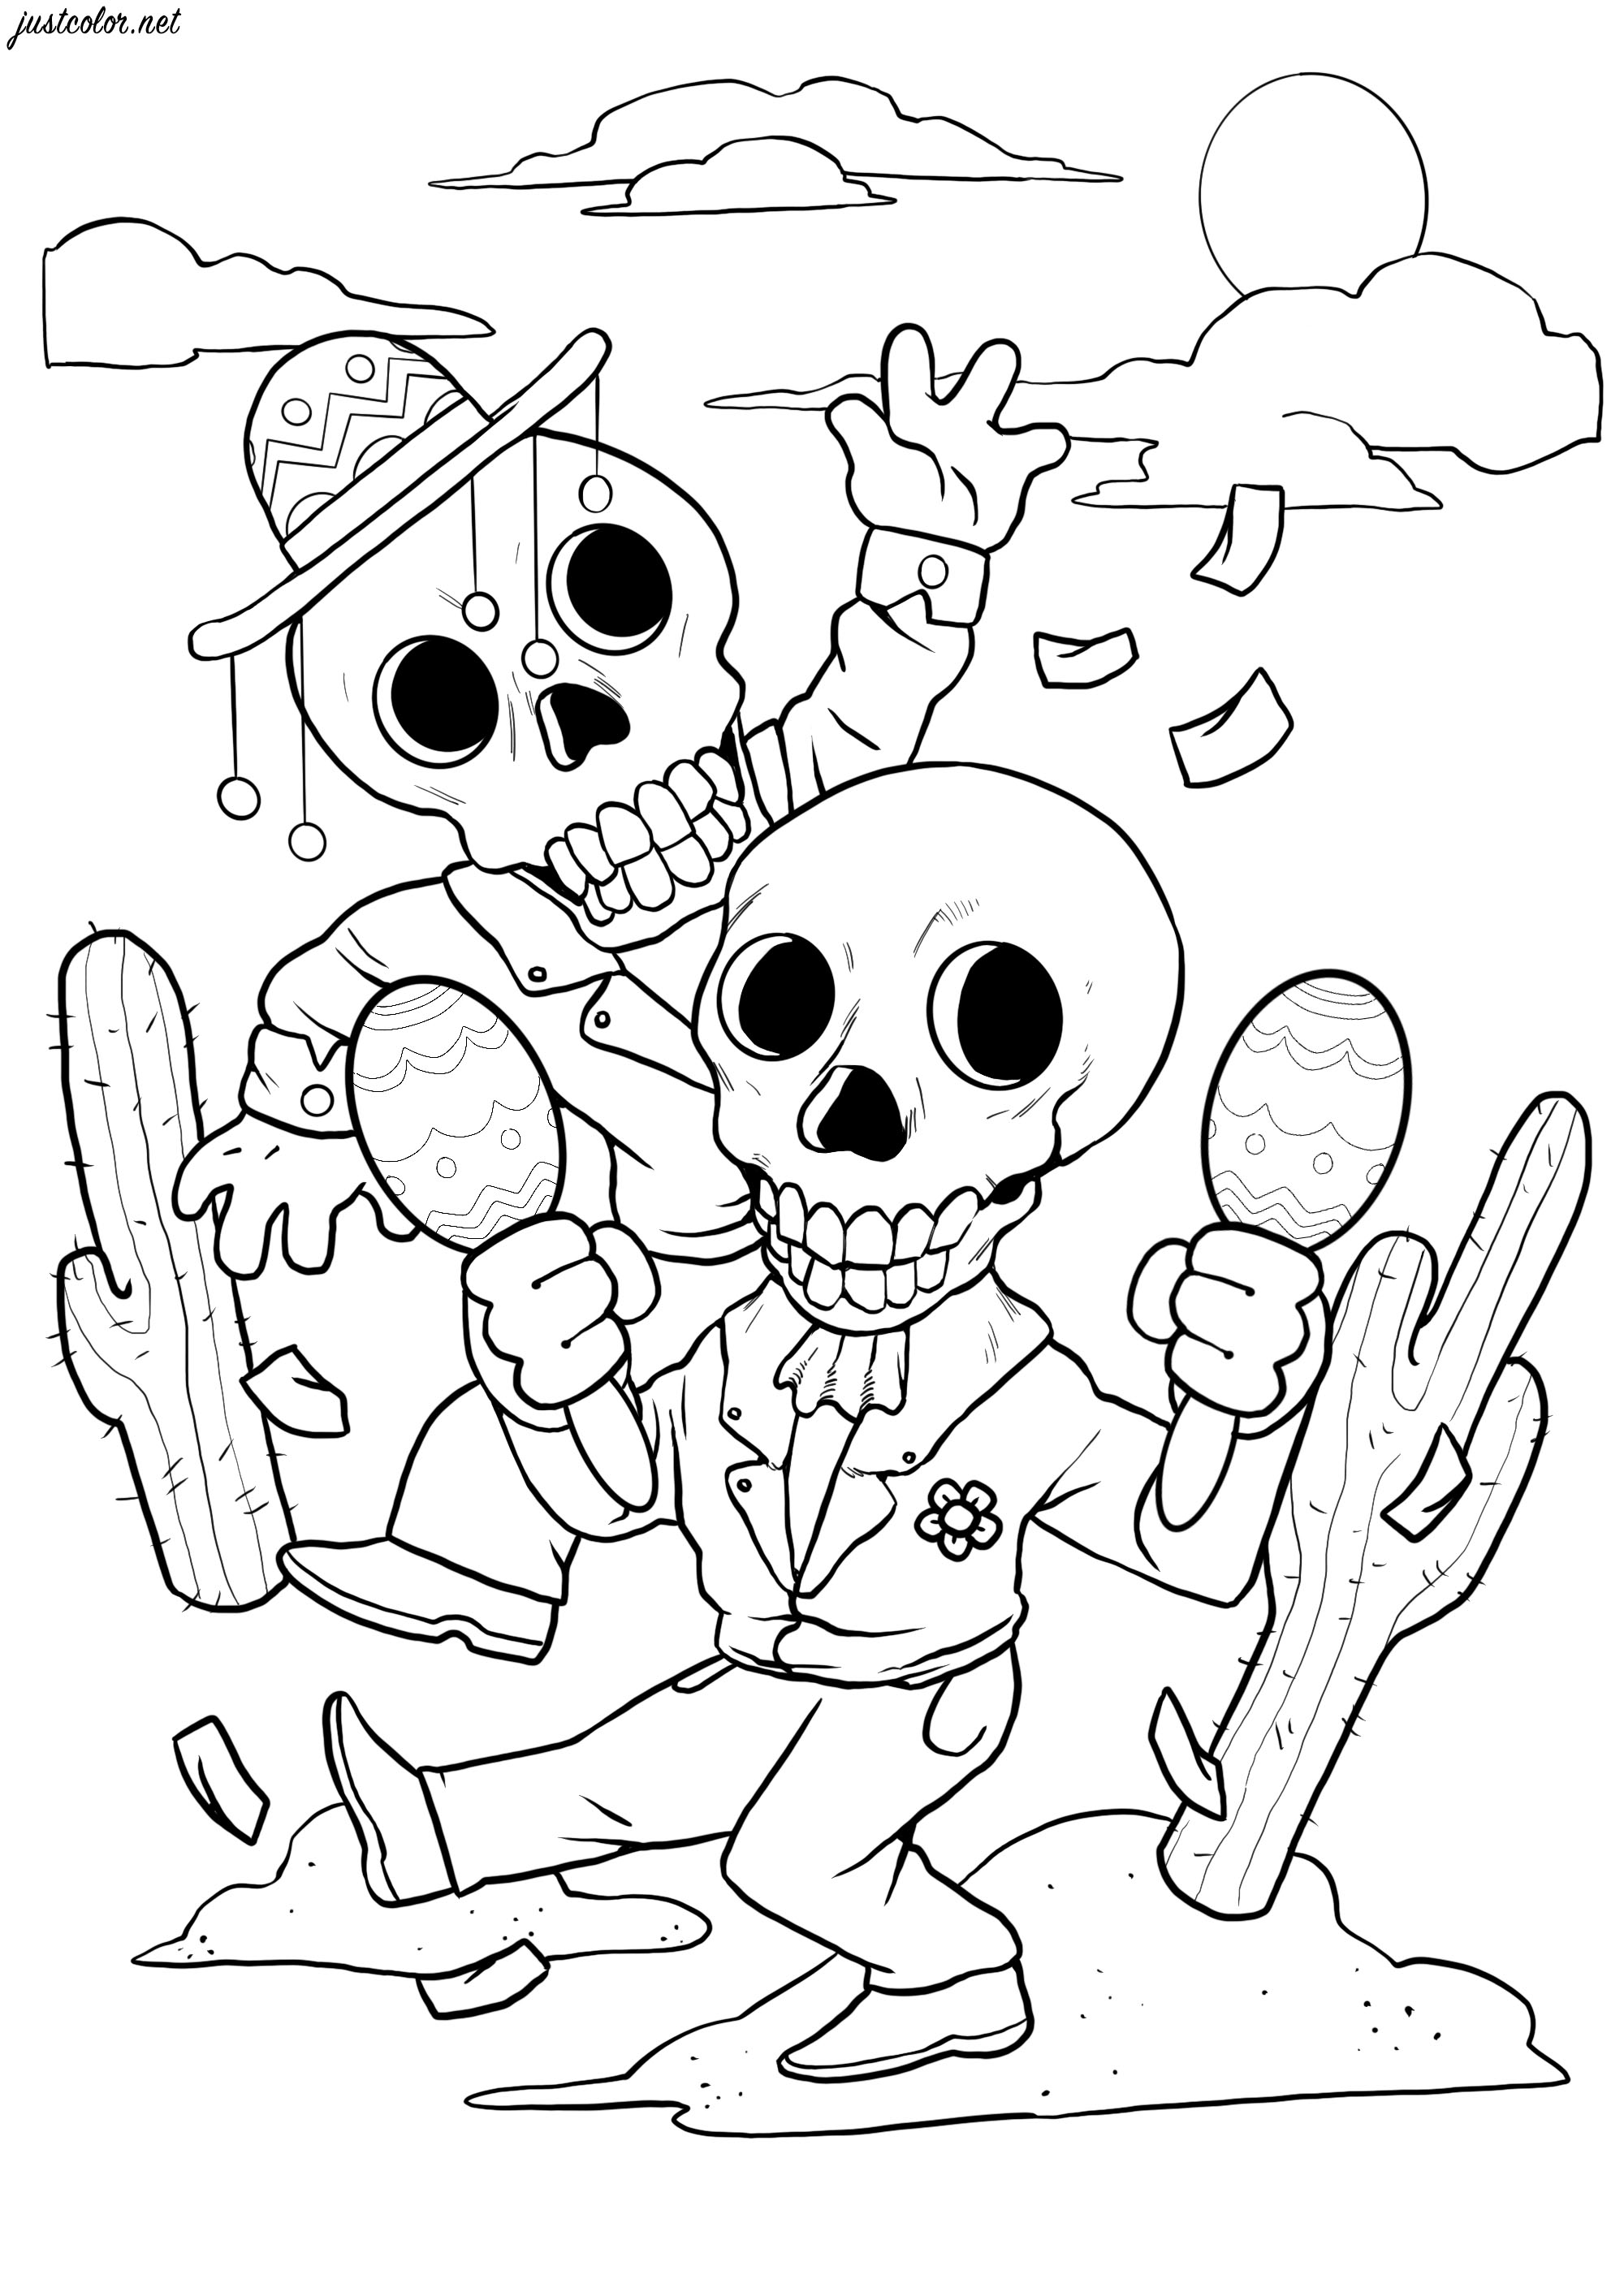 Dancing skeletons